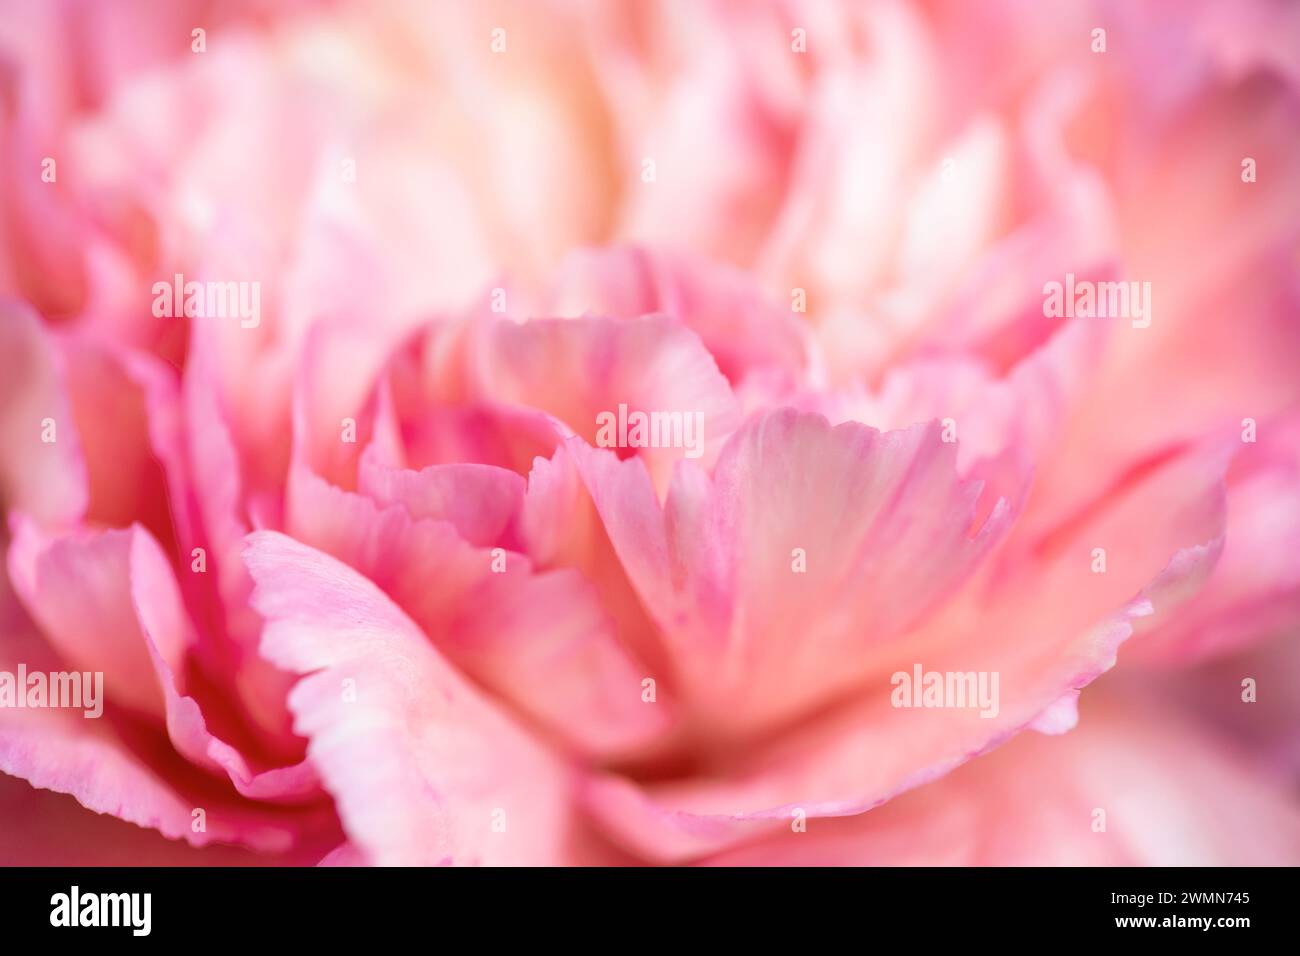 Extrême gros plan d'une fleur de pivoine rose, fond abstrait floral Banque D'Images